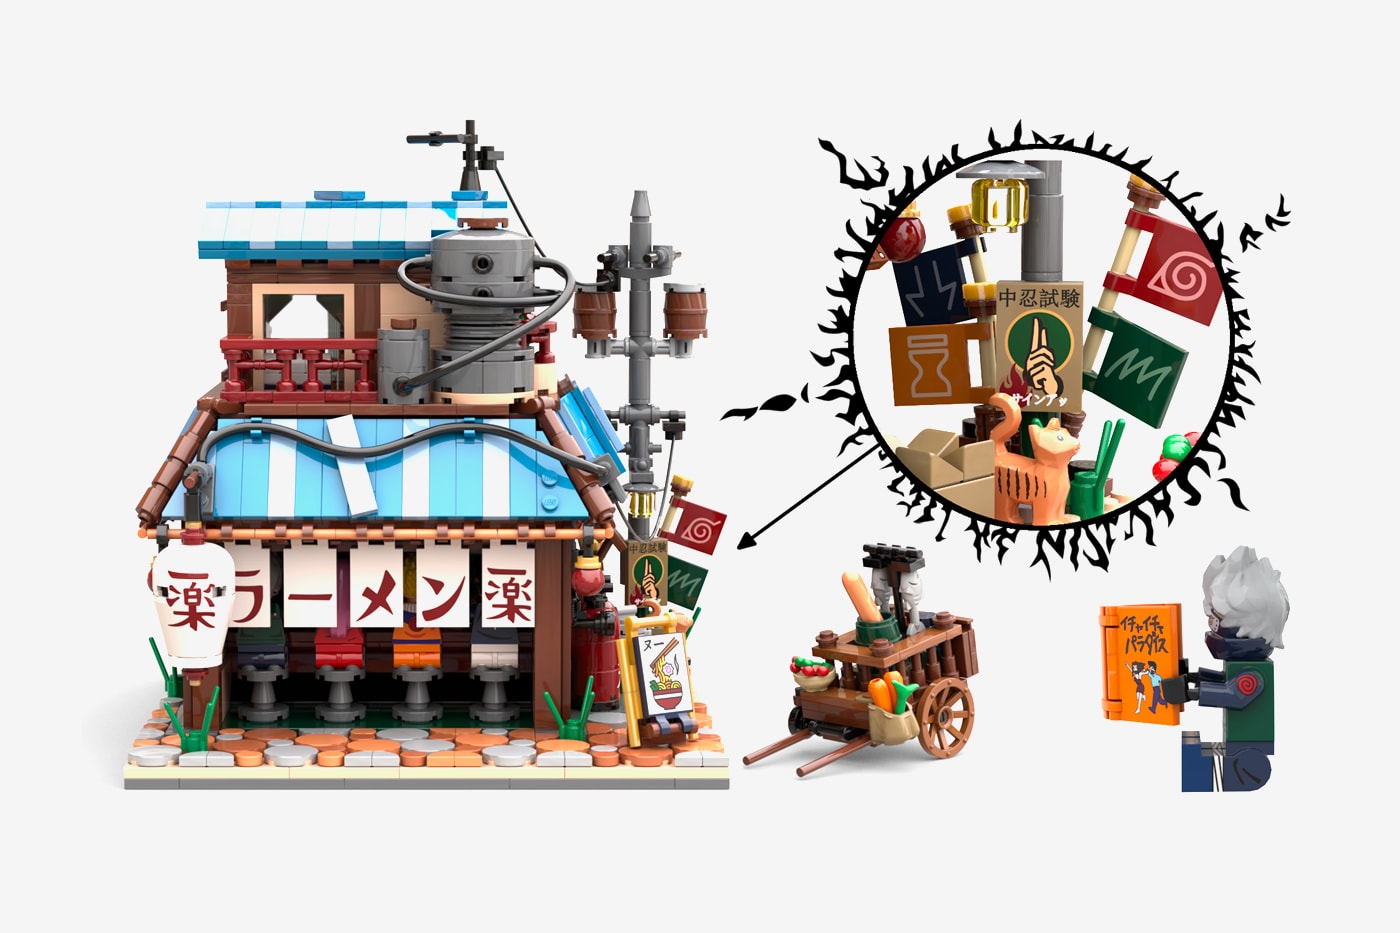 Naruto' Ichiraku Ramen Shop LEGO IDEAS Set Project